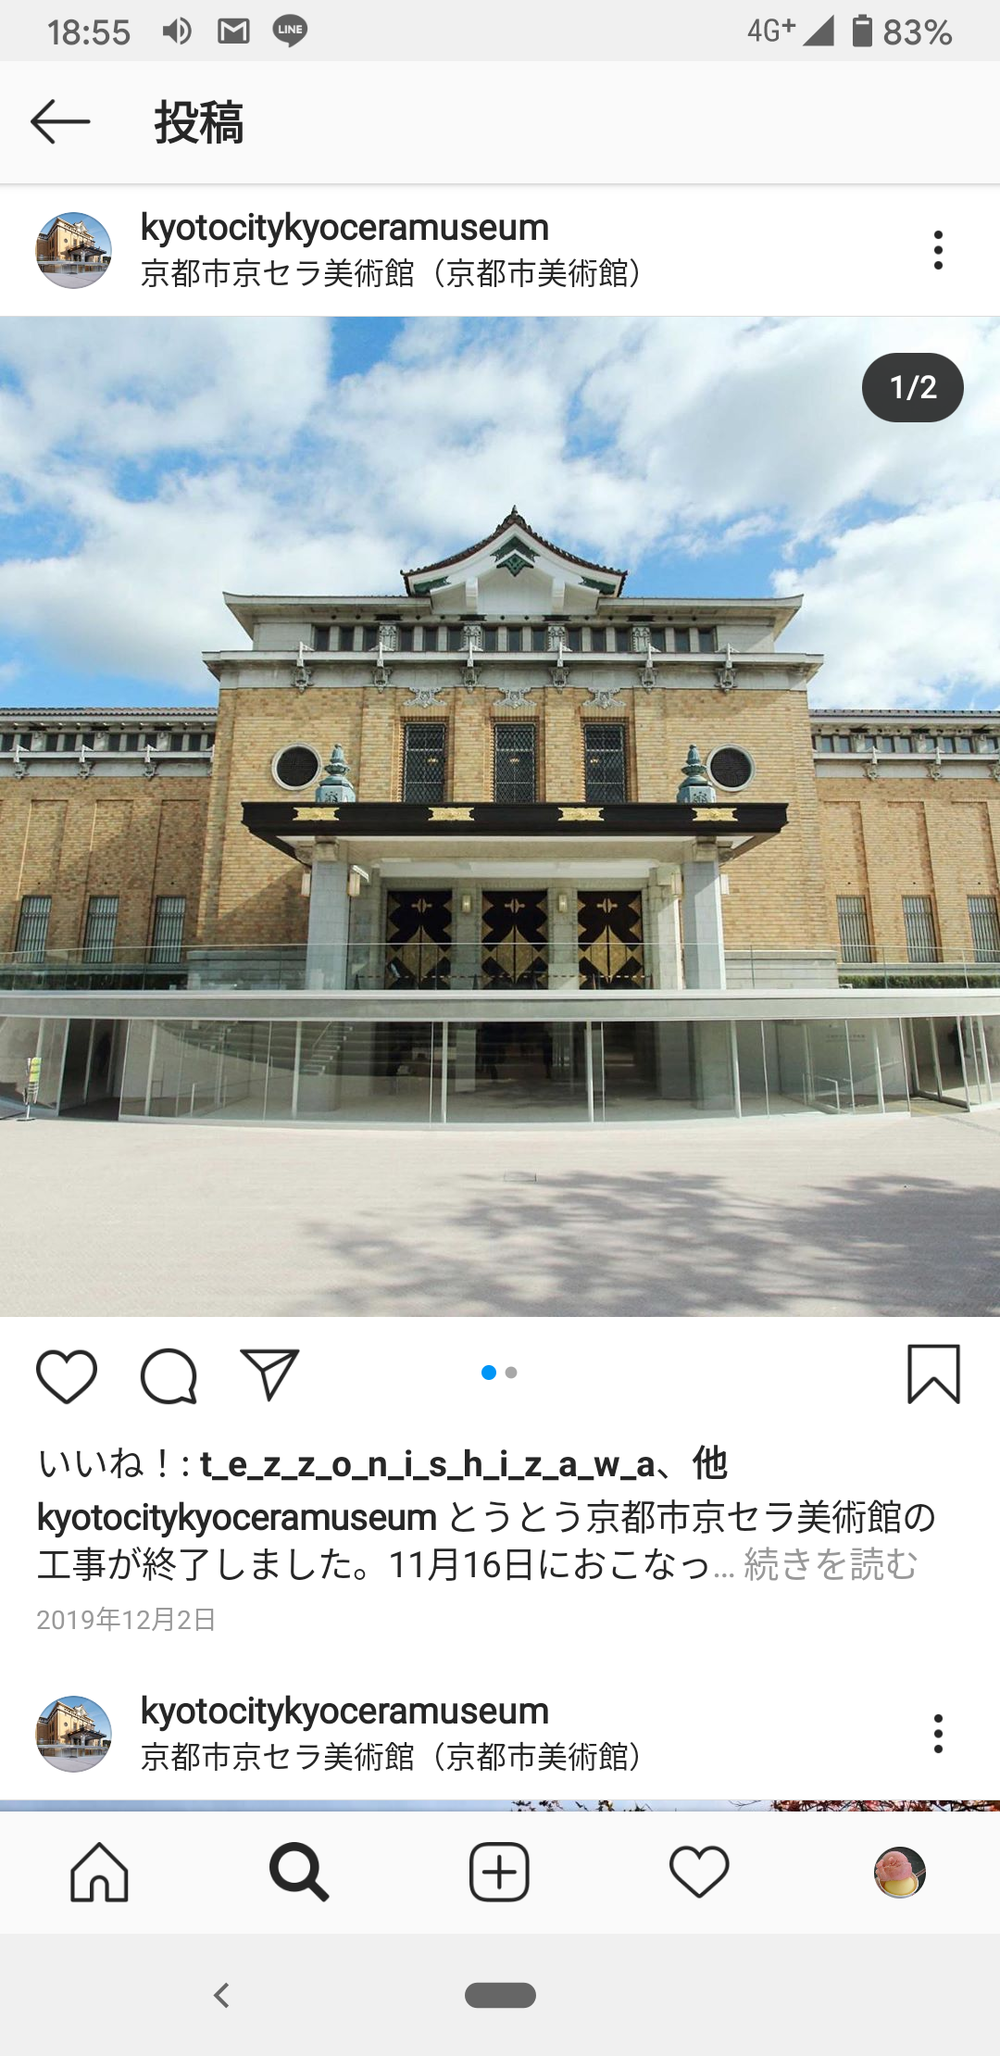 注目の新スポット!「京都市京セラ美術館」に行こう!